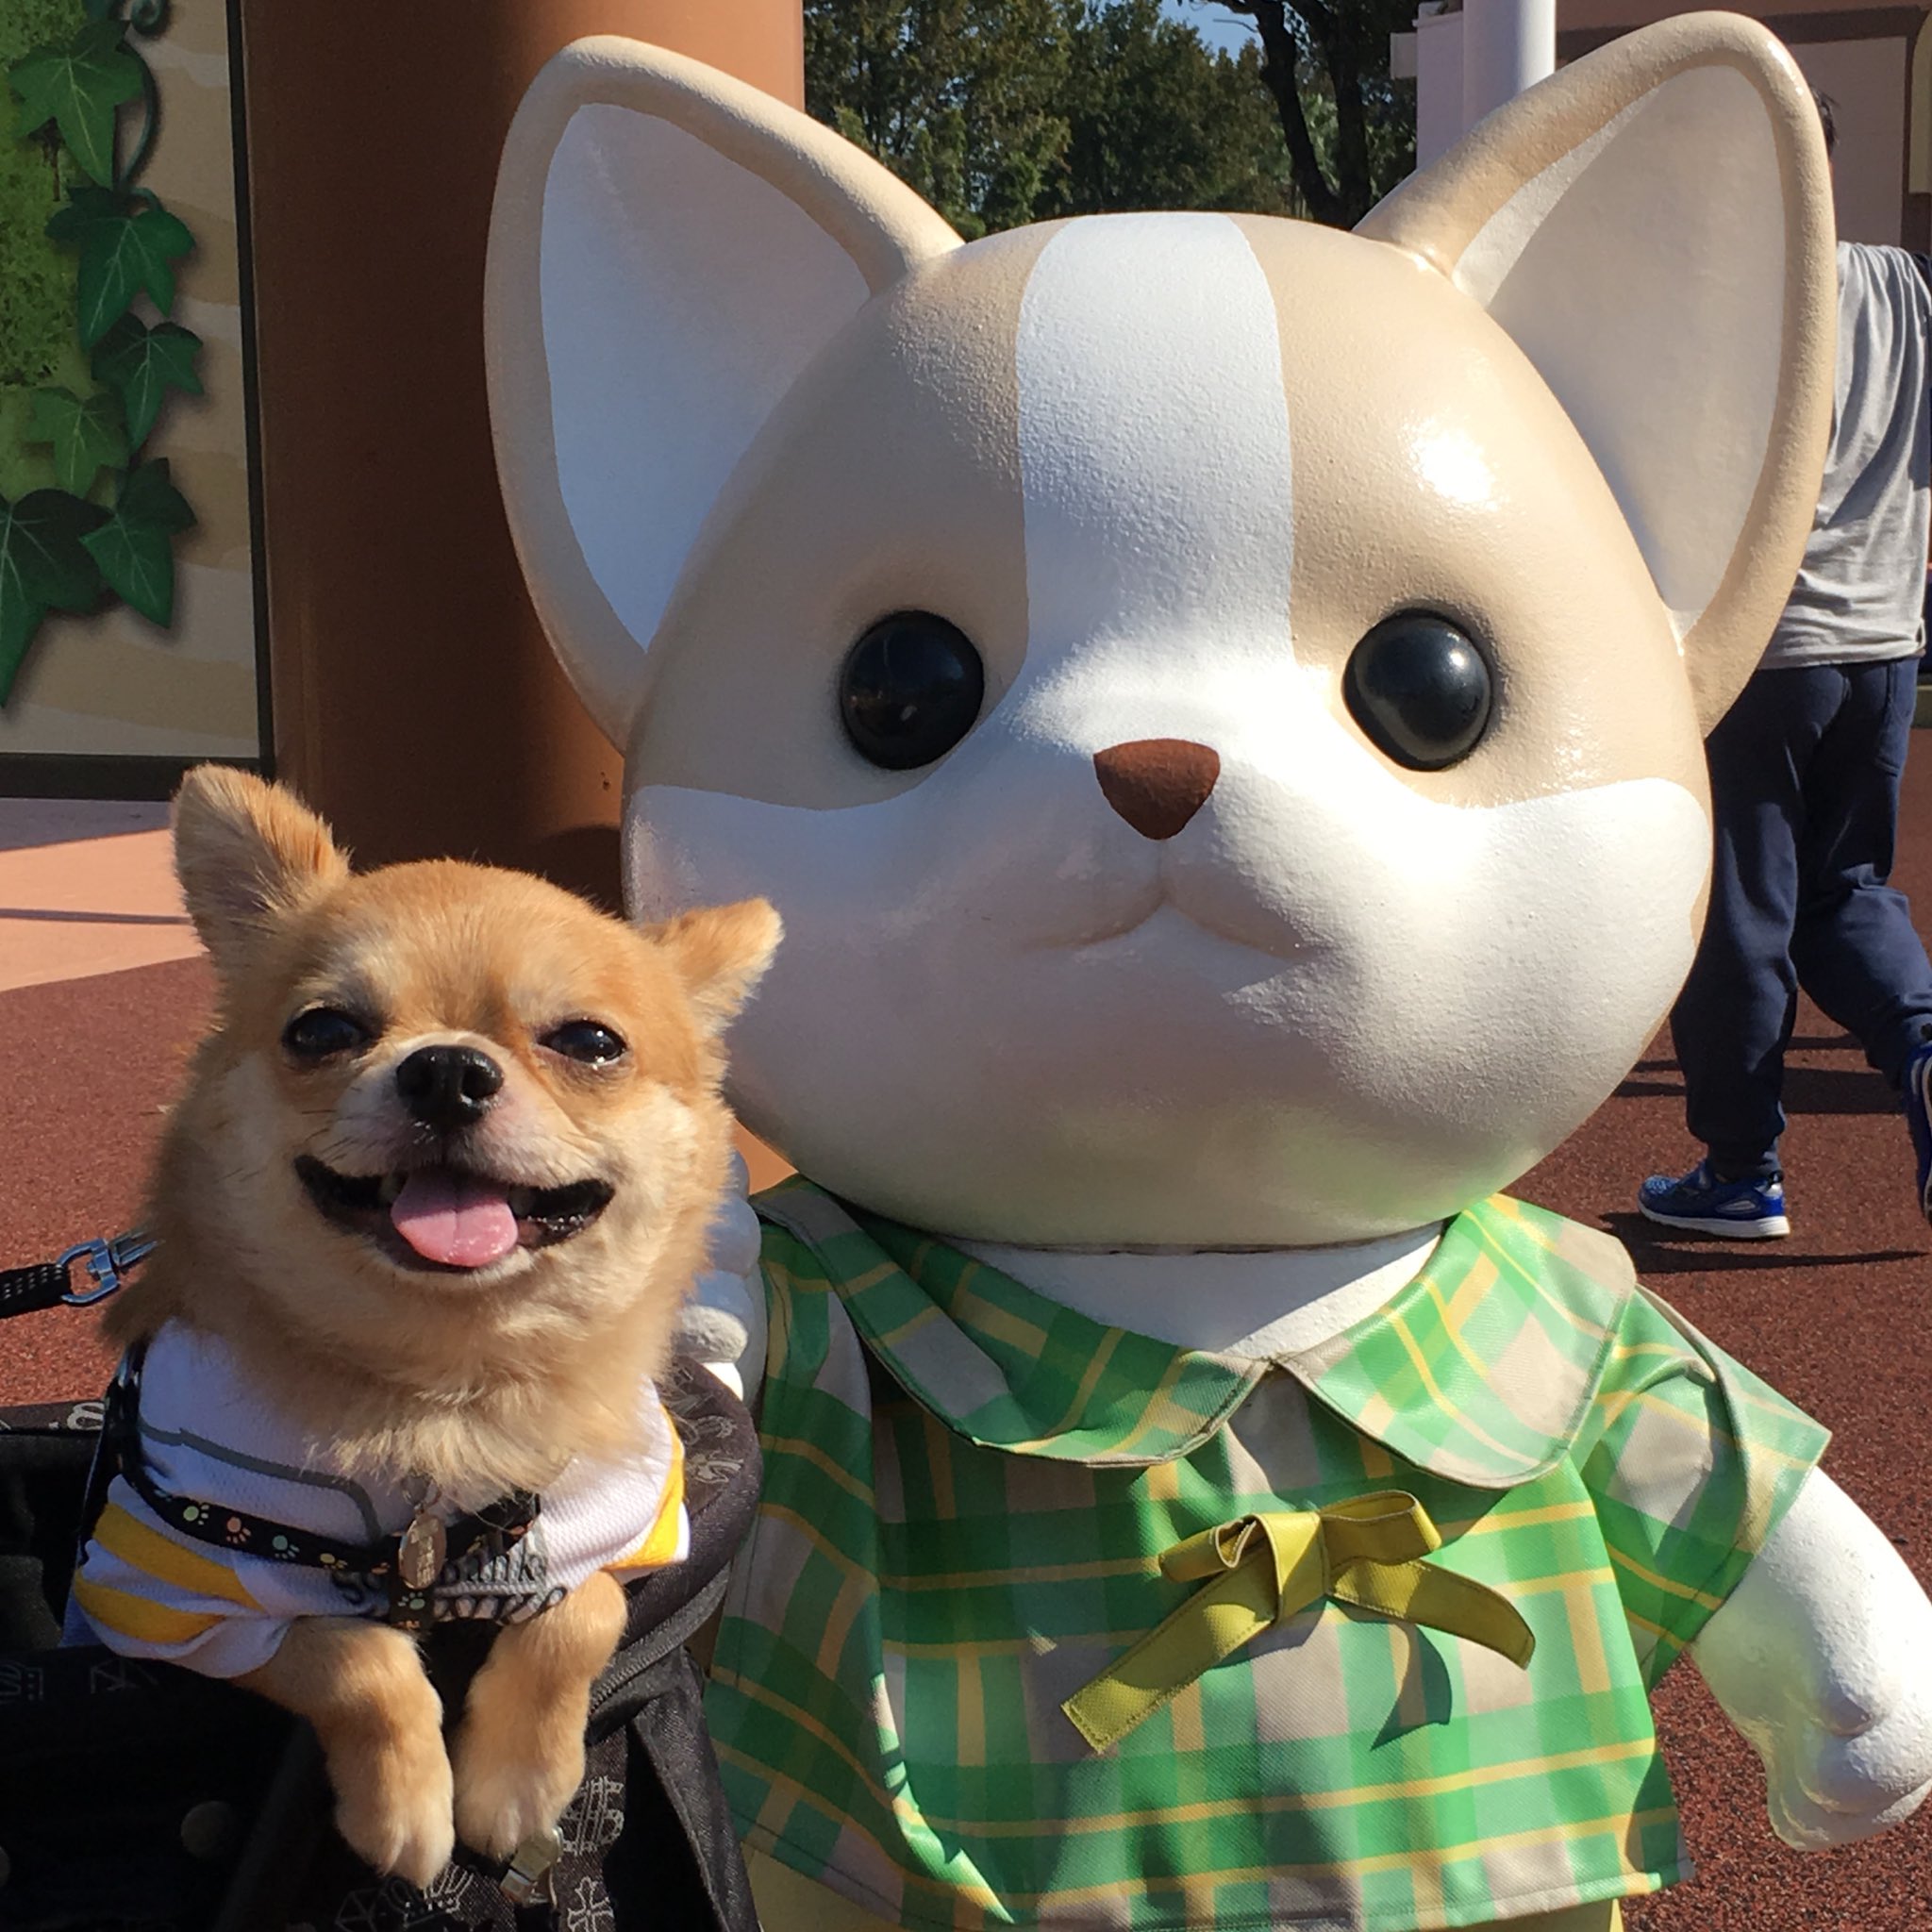 Lineスタンプ販売中 Twitterren 最初はビビってた シルバニアファミリーにも 慣れたようでこの表情 かわゆす Chihuahua チワワ 犬 いぬ かしいかえん 福岡 遊園地 シルバニアファミリー 犬吉猫吉 撮影会 モデル犬 抱っこちゃん